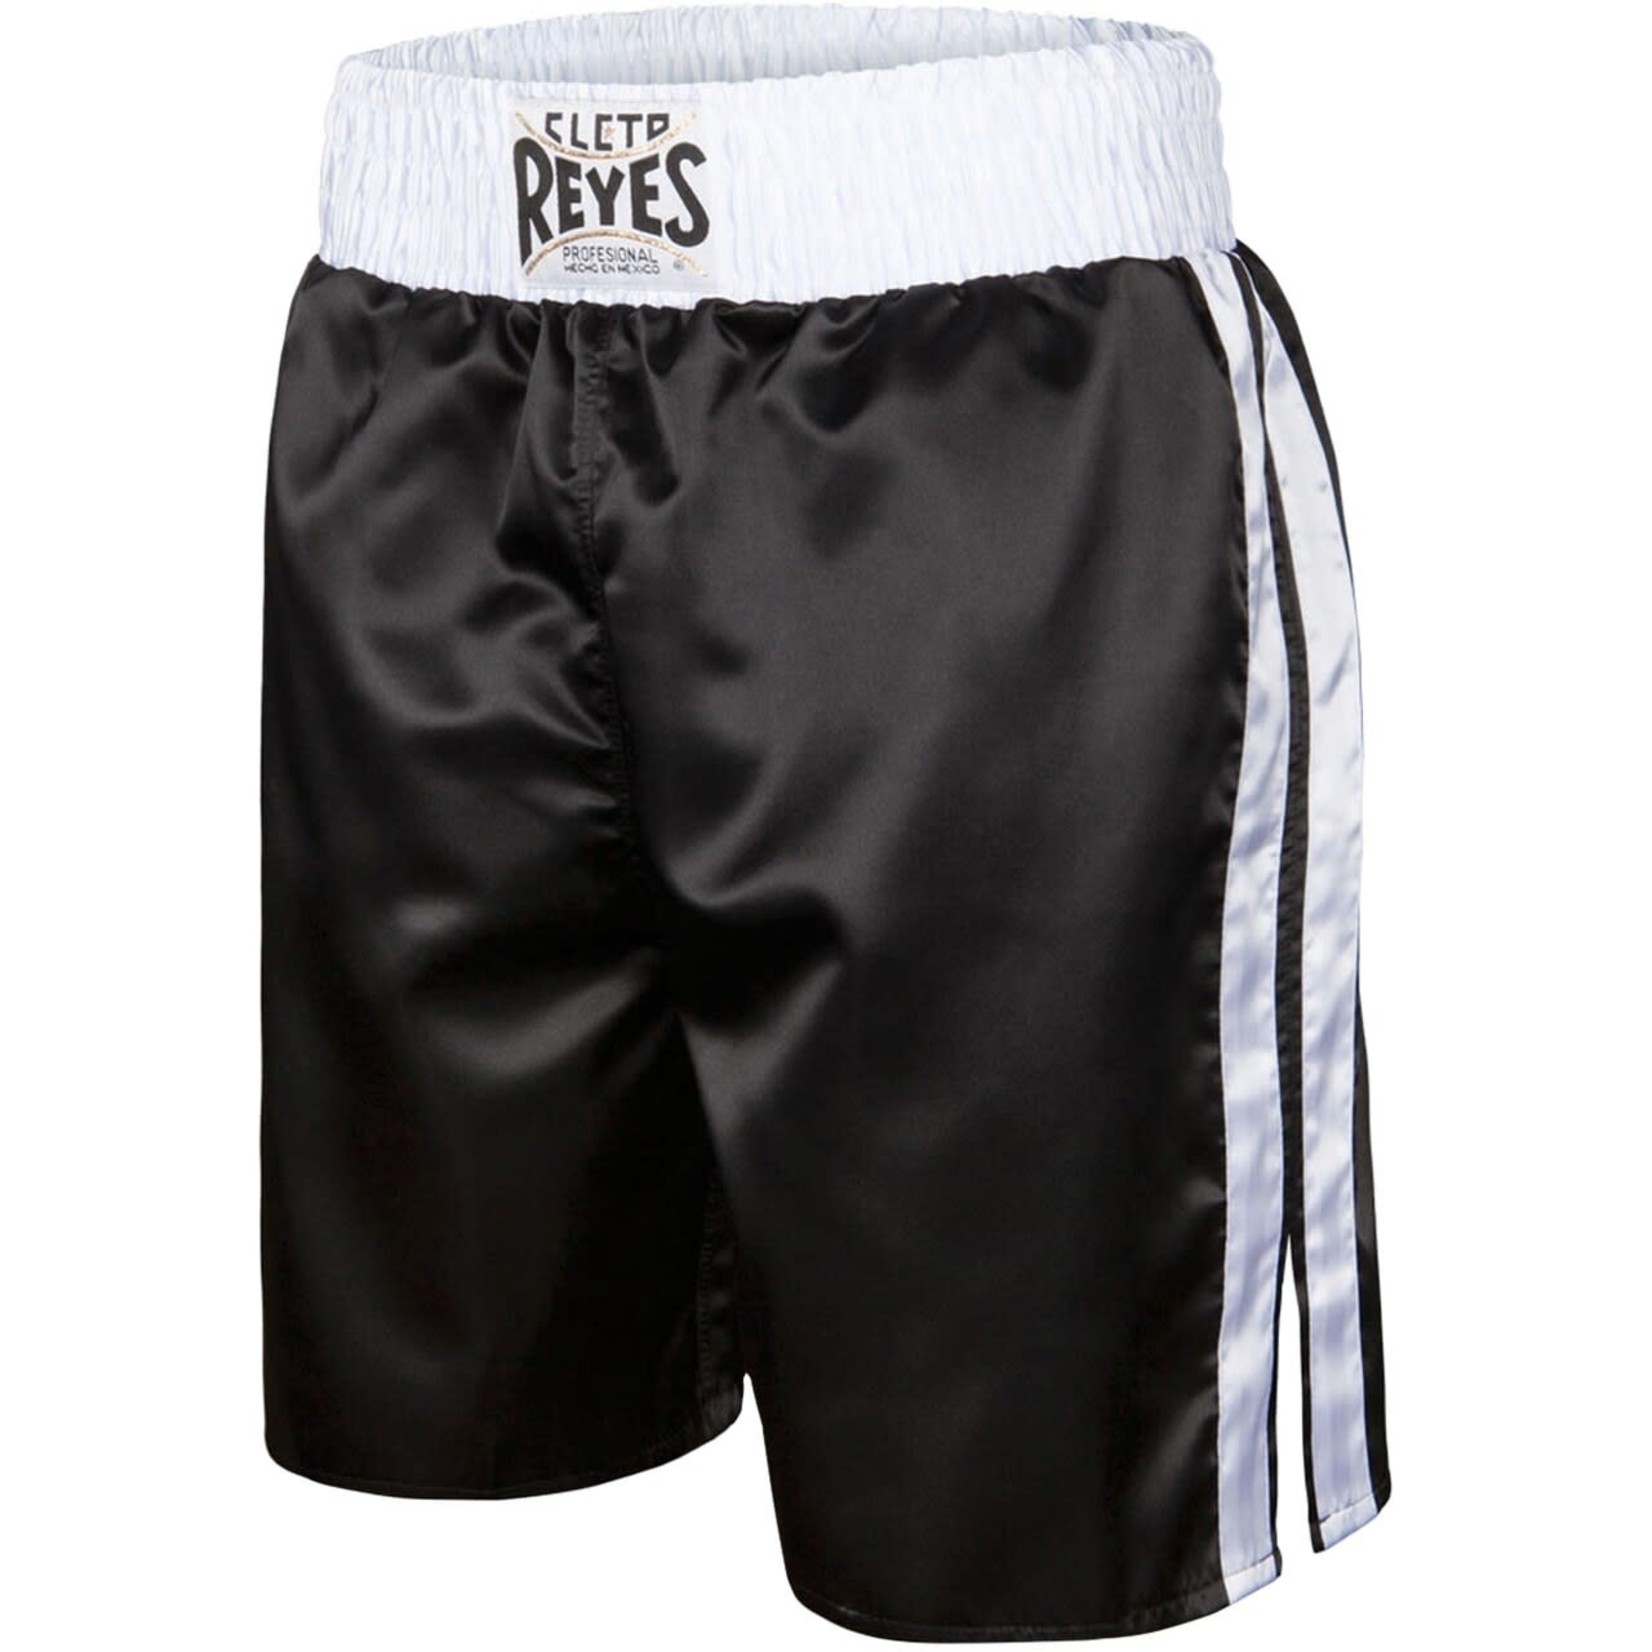 Cleto Reyes Cleto Reyes Boxing Shorts Black